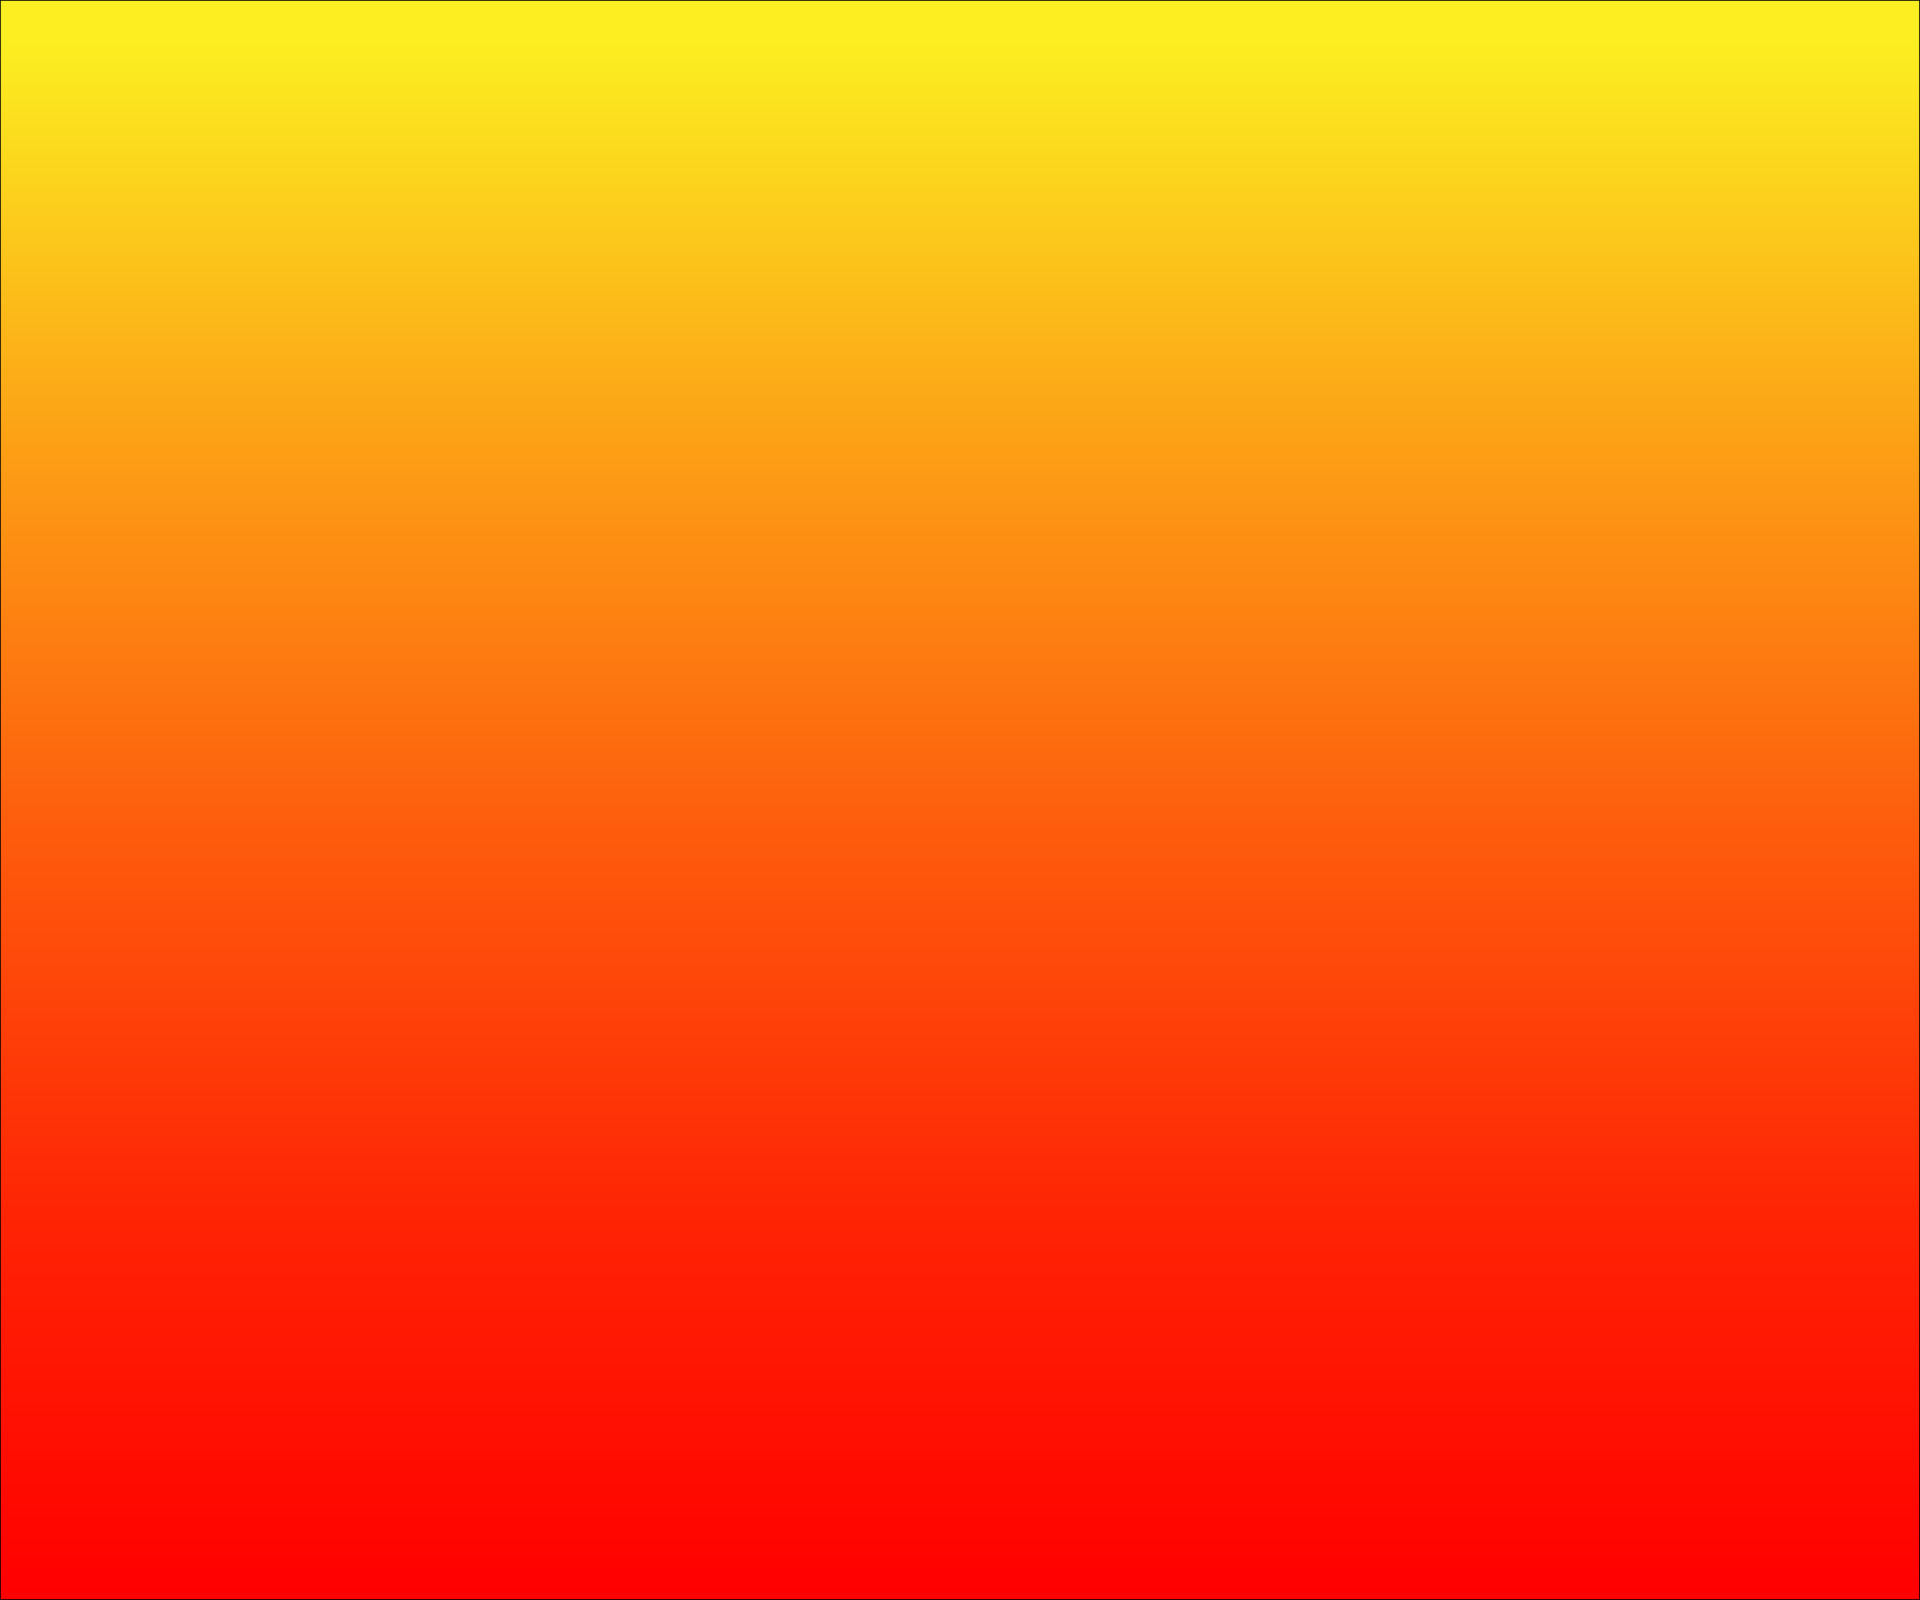 Cập nhật background yellow orange red mới nhất, tải về miễn phí